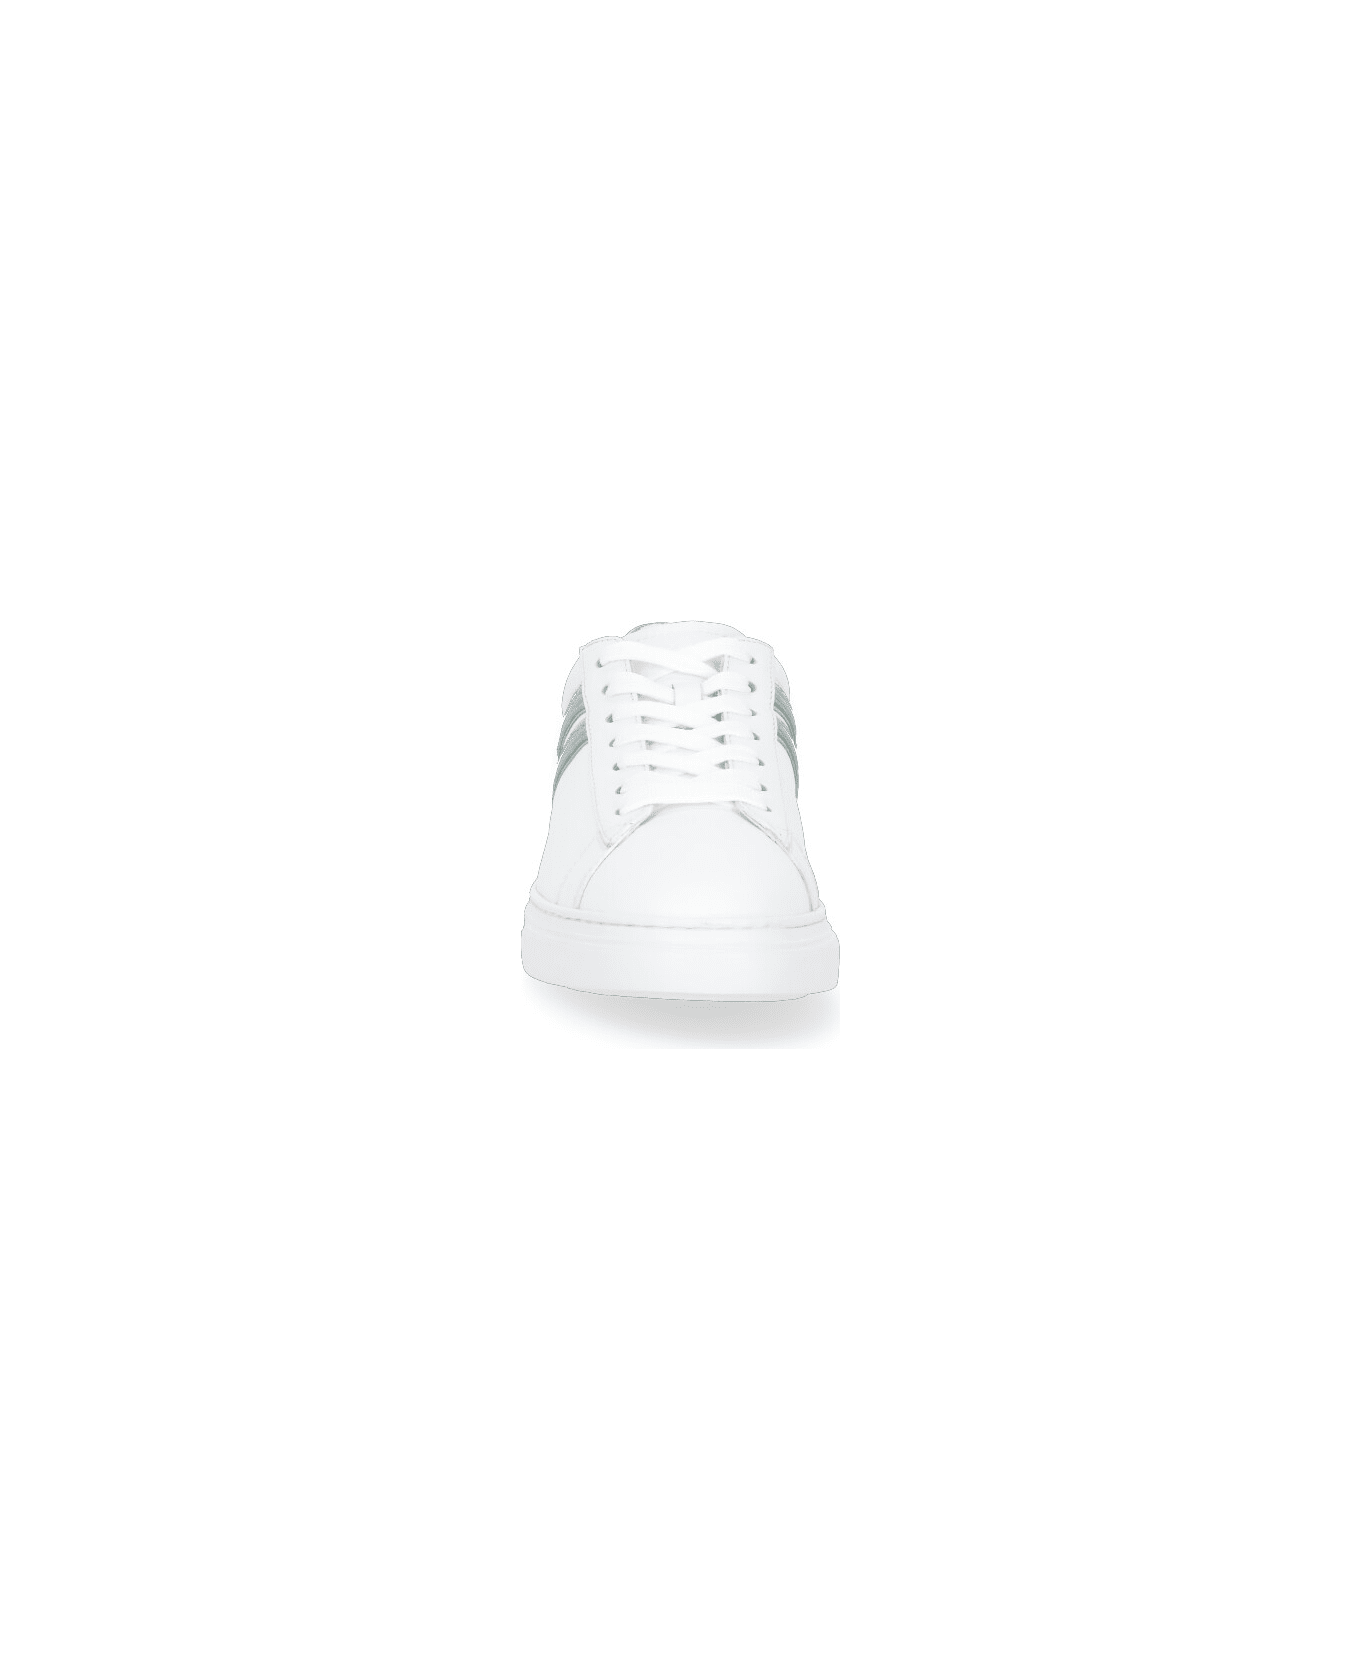 Hogan H365 Sneakers - Green/white スニーカー